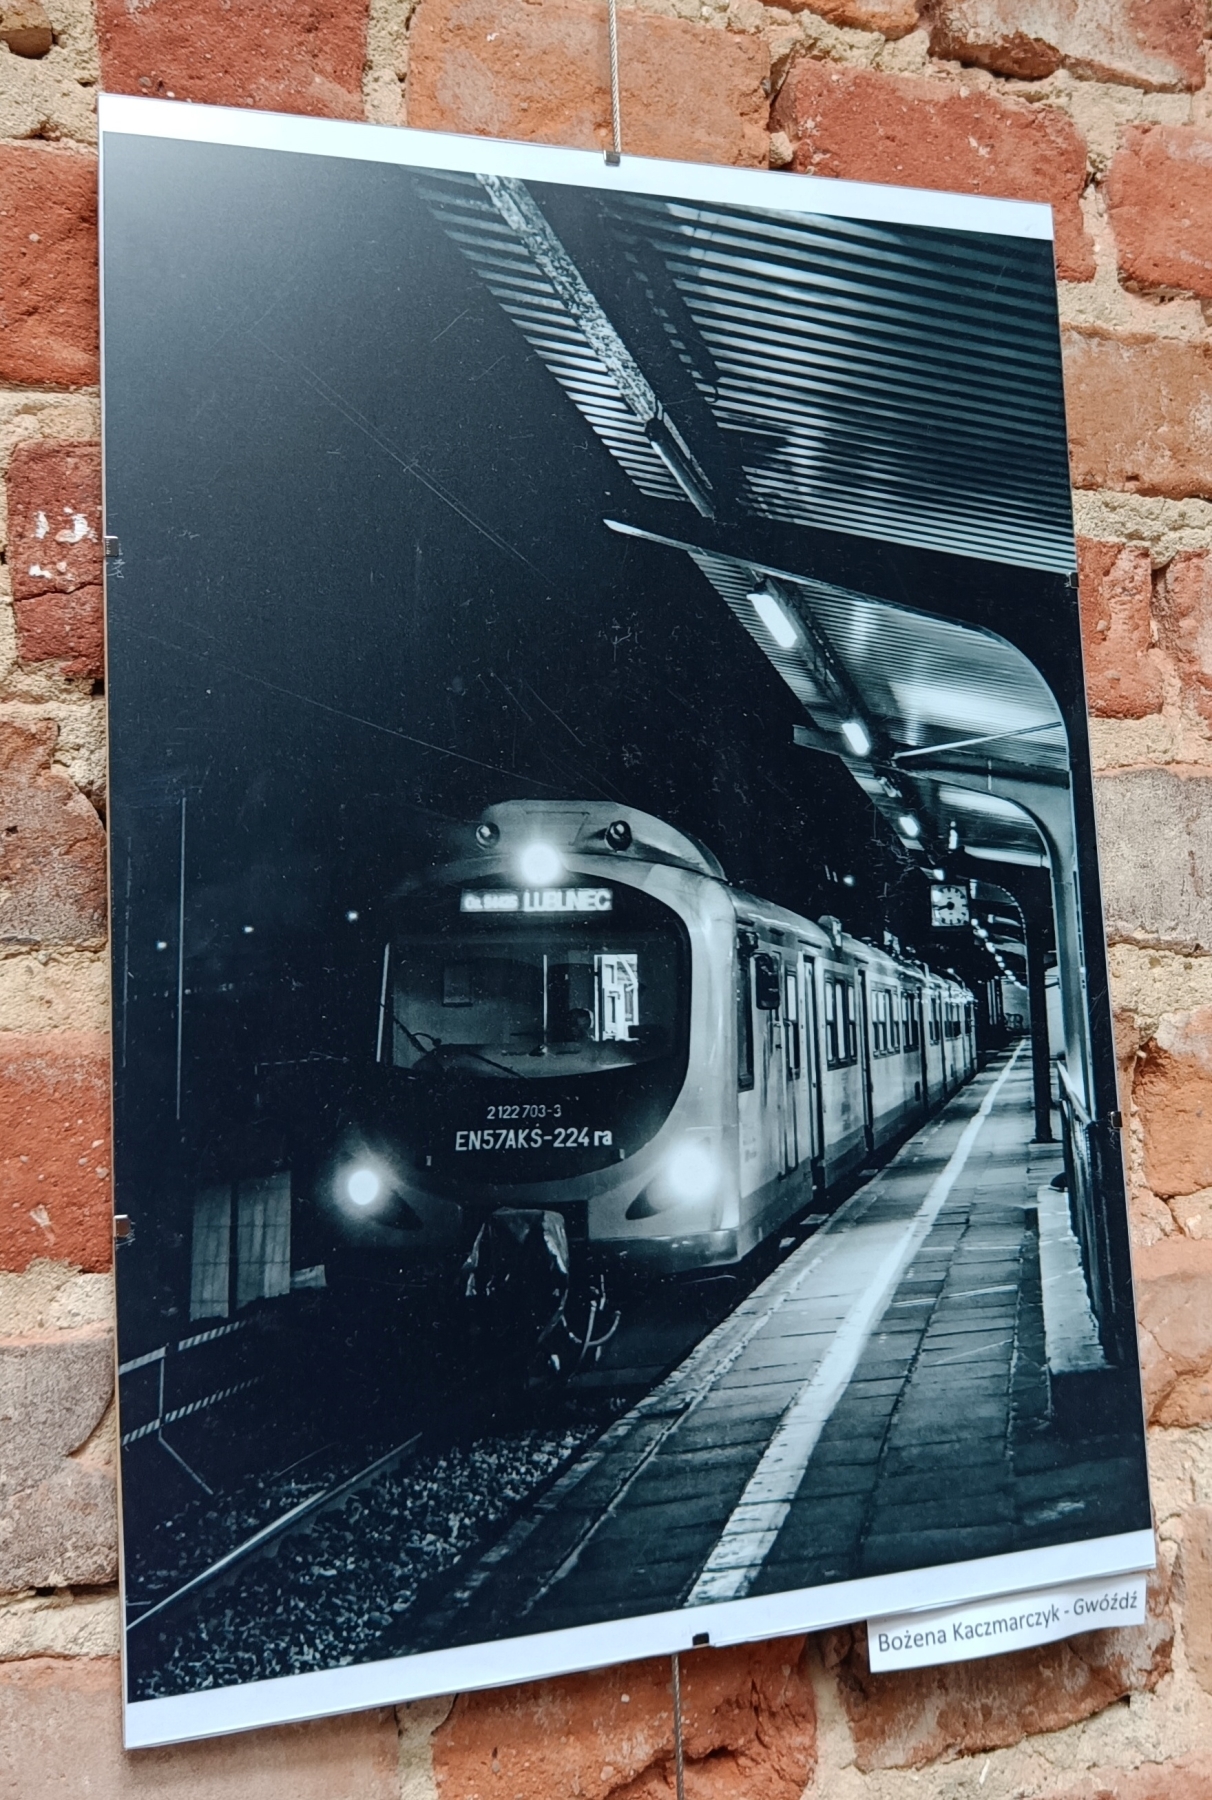 Zdjęcia wiszą na ceglanej ścianie pociąg stojący na stacji